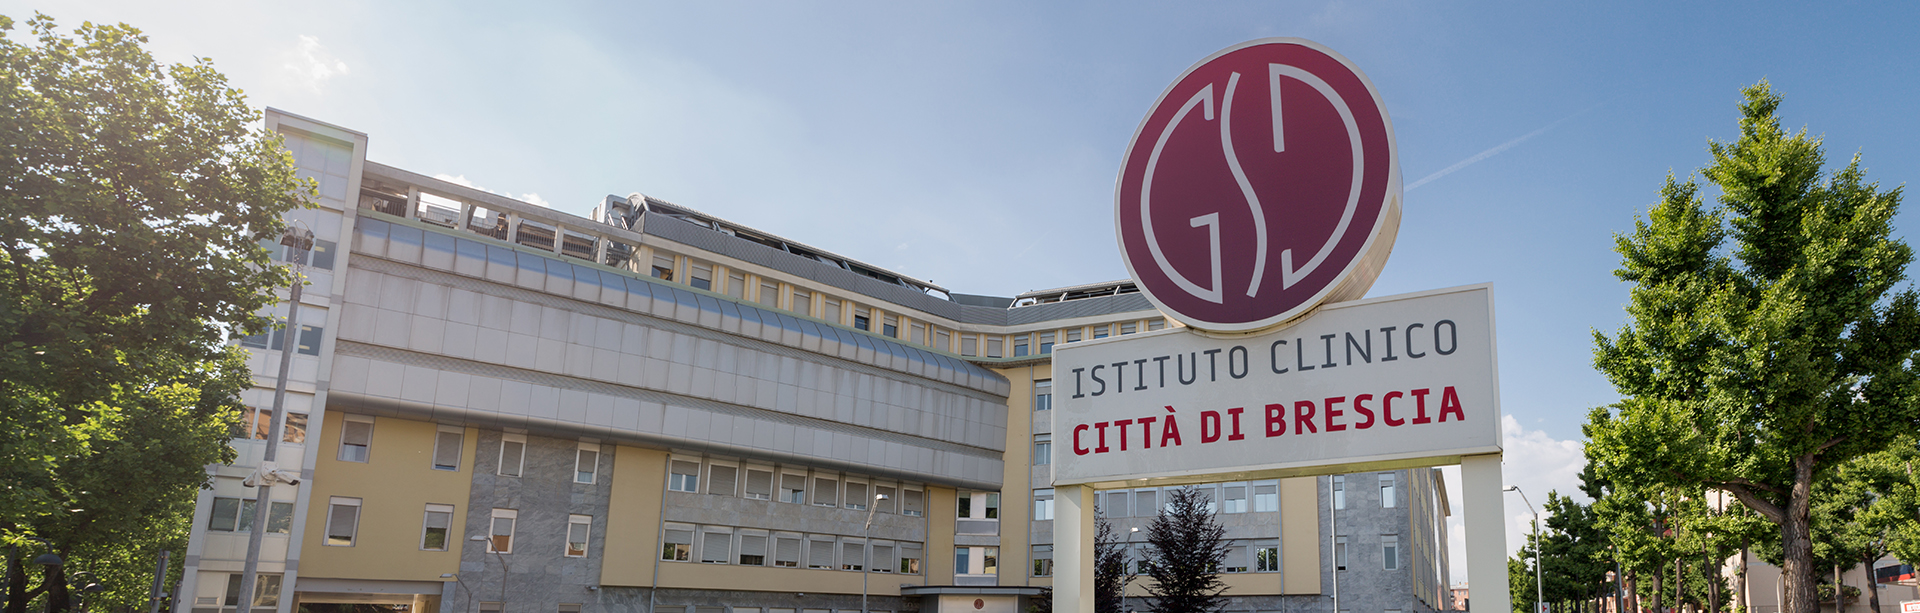 Istituto Clinico Città di Brescia